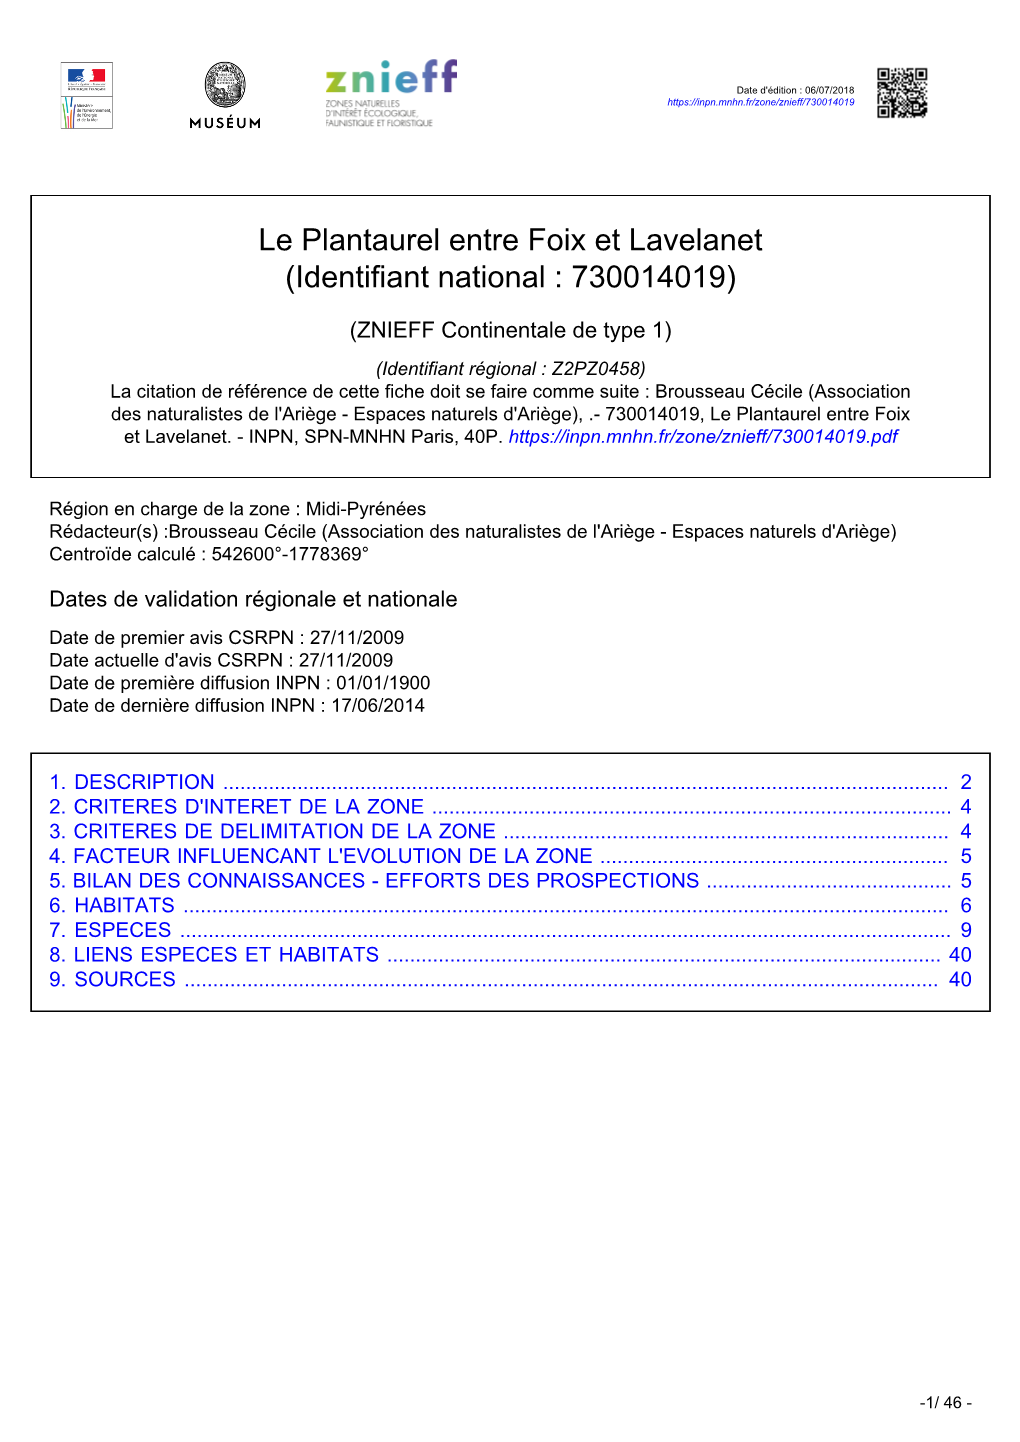 Le Plantaurel Entre Foix Et Lavelanet (Identifiant National : 730014019)